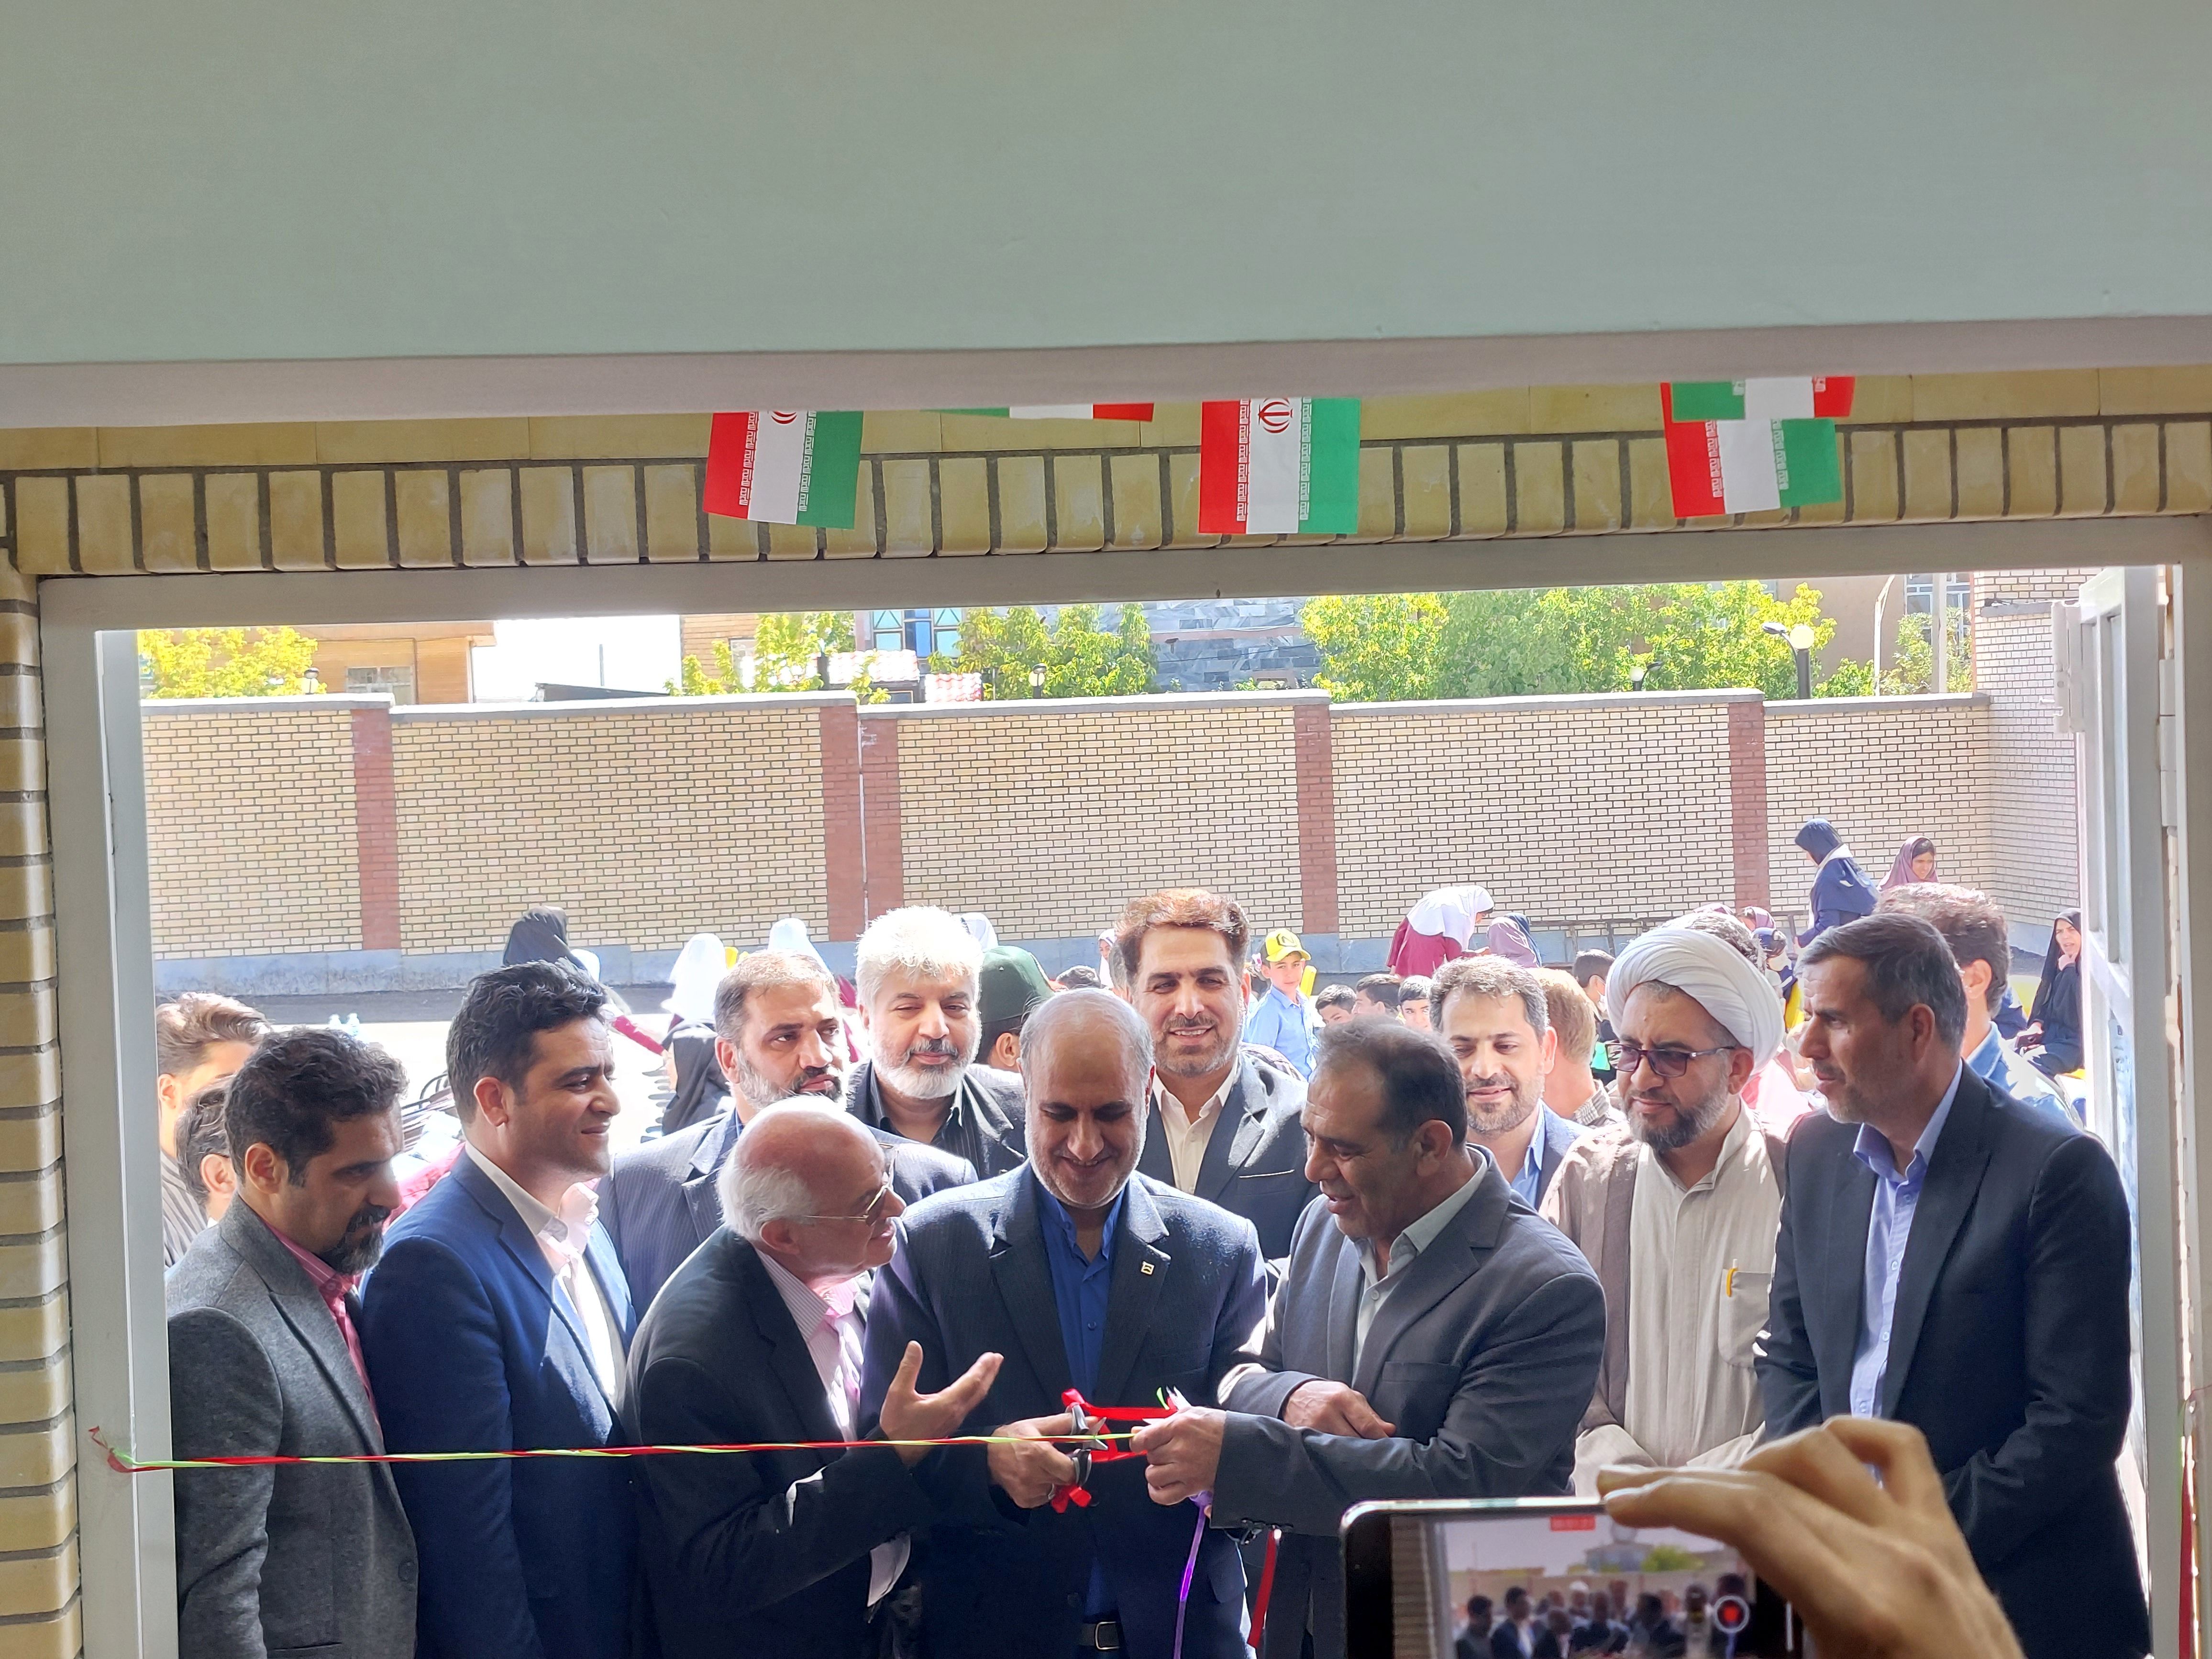 افتتاح بیست و ششمین مدرسه شهدای بانک مسکن در روستای لوزدر علیای شازند